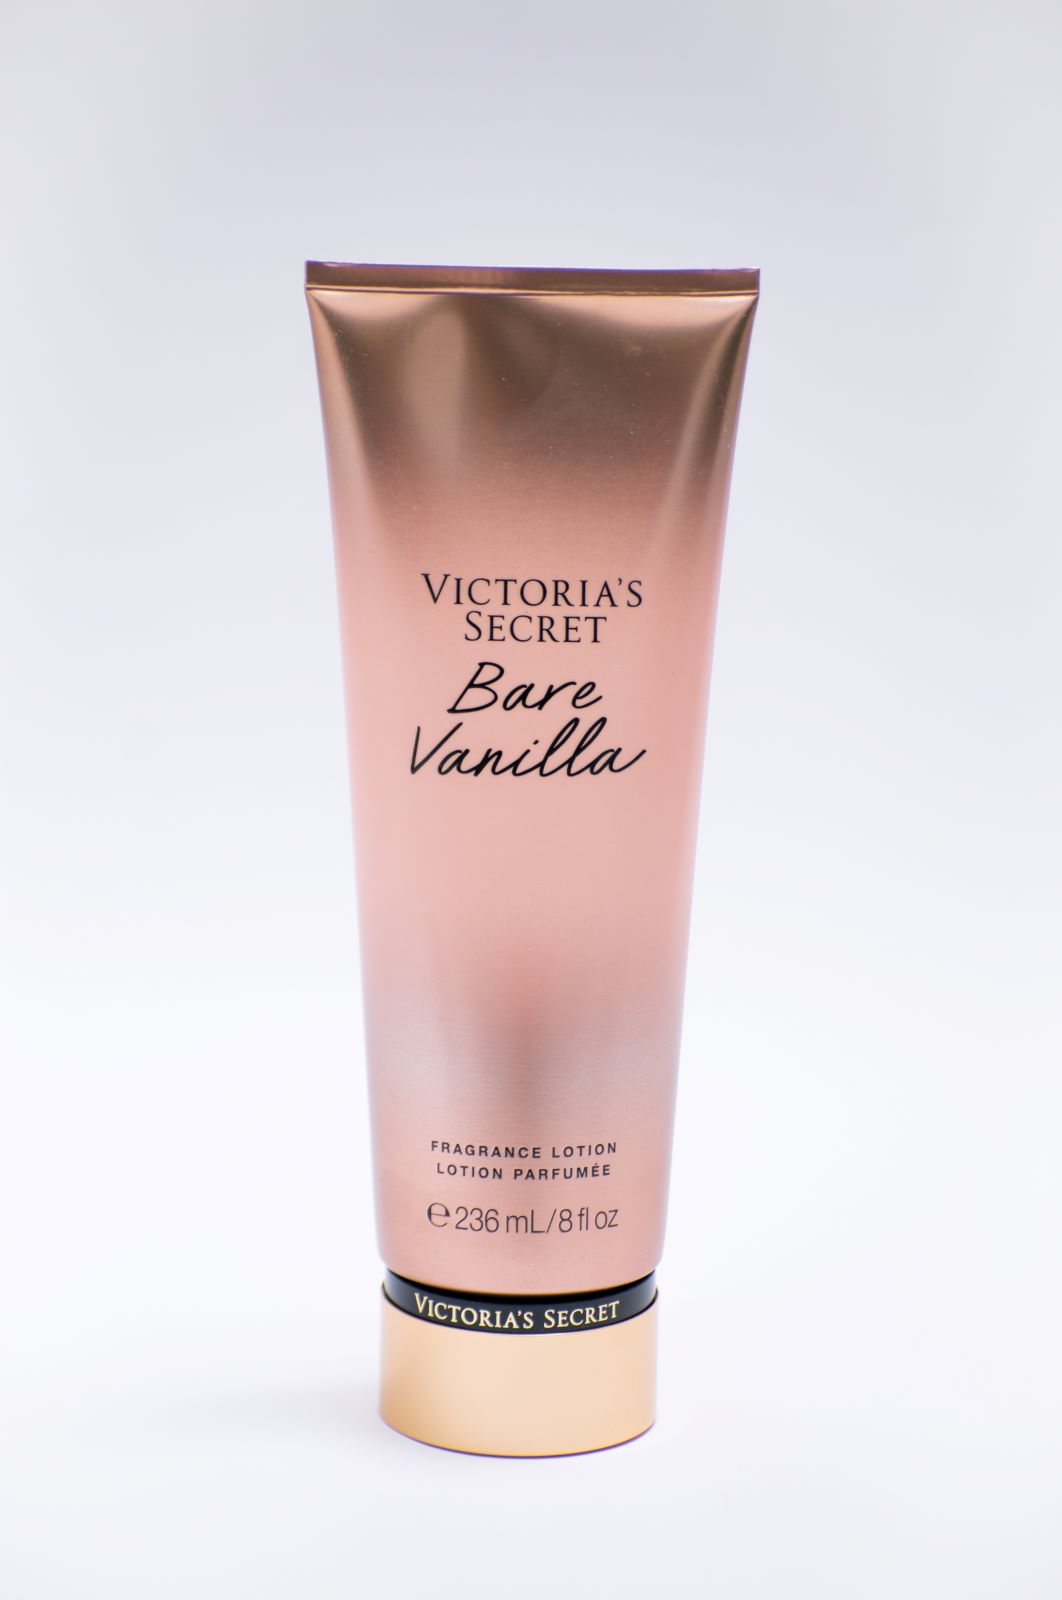 Crema Humectante Victoria's Secret "Bare Vanilla".